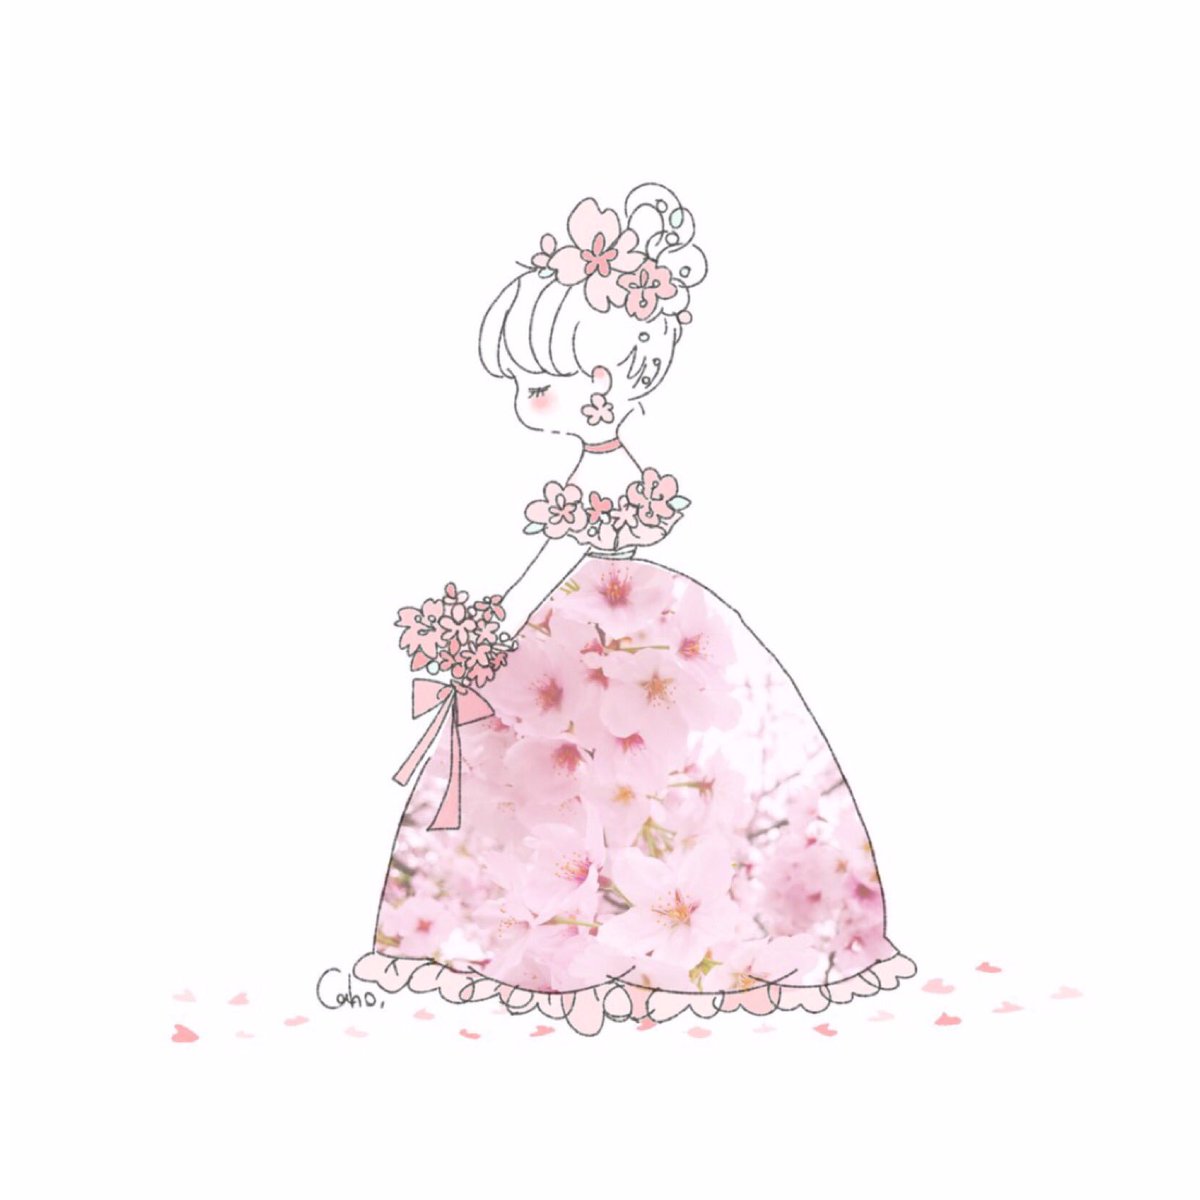 「家の近くの桜のドレス?
満開で綺麗でした✨ 」|Caho.のイラスト